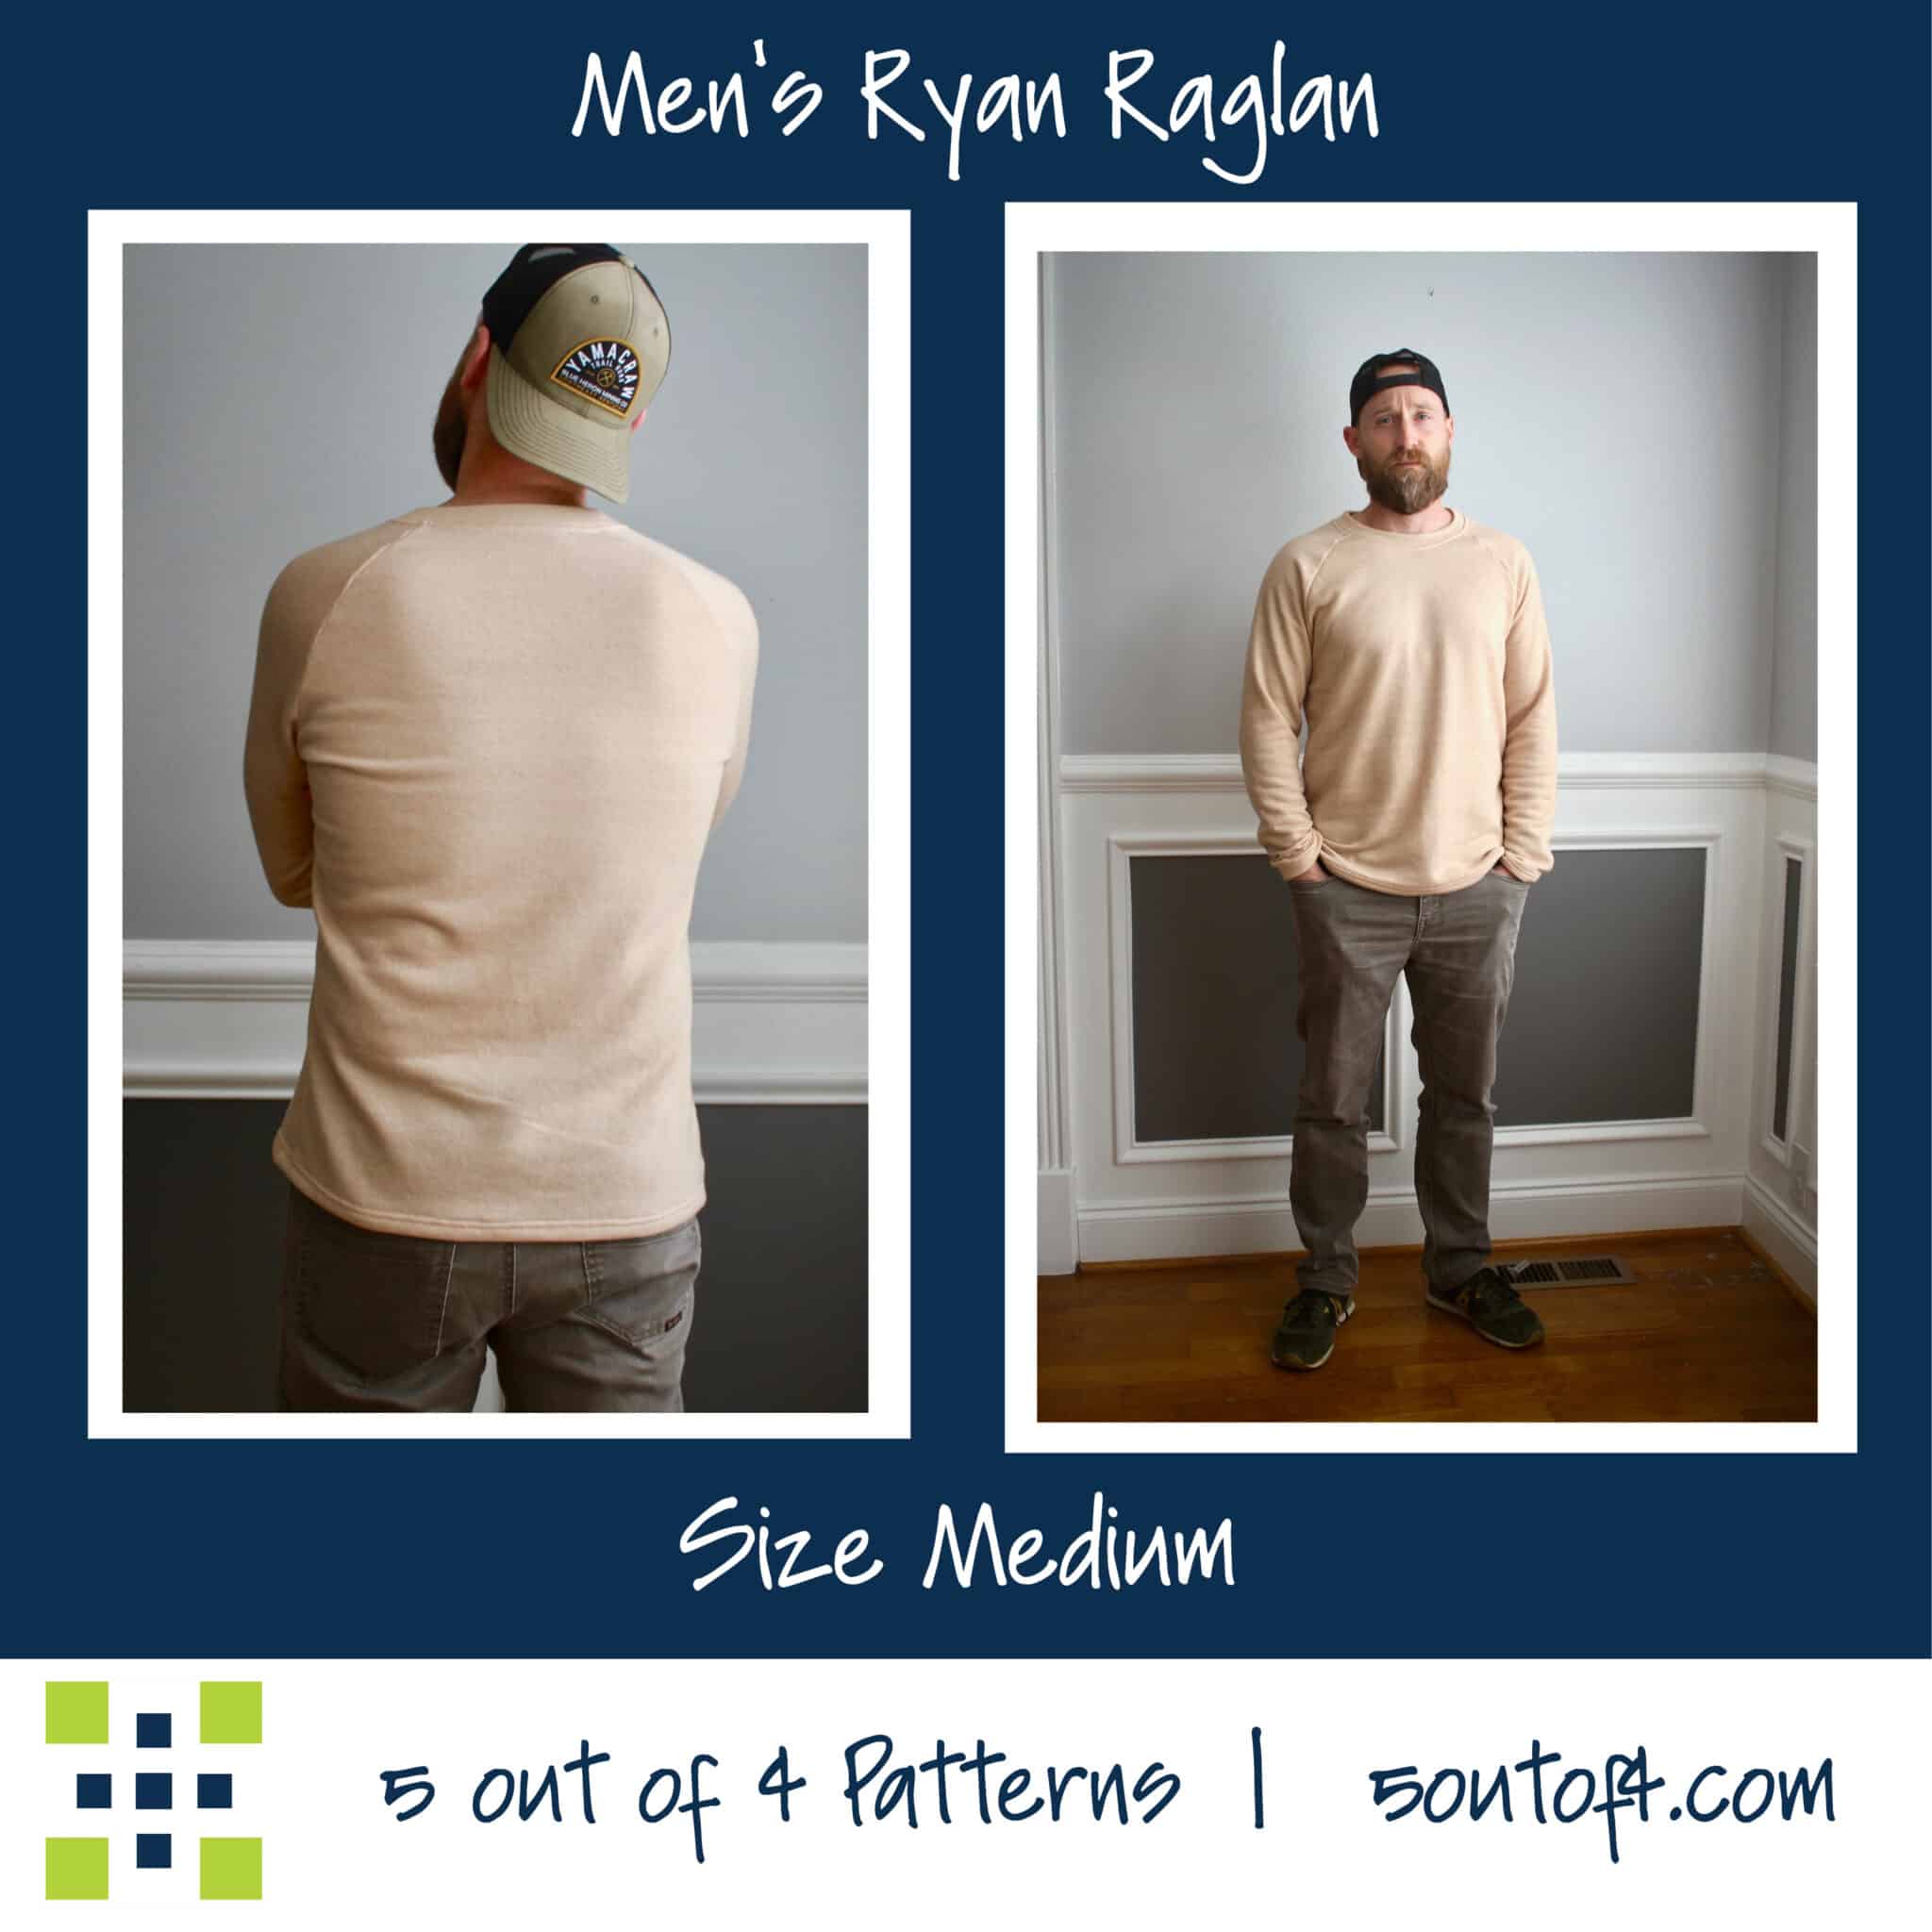 Men's Ryan Raglan - 5 out of 4 Patterns